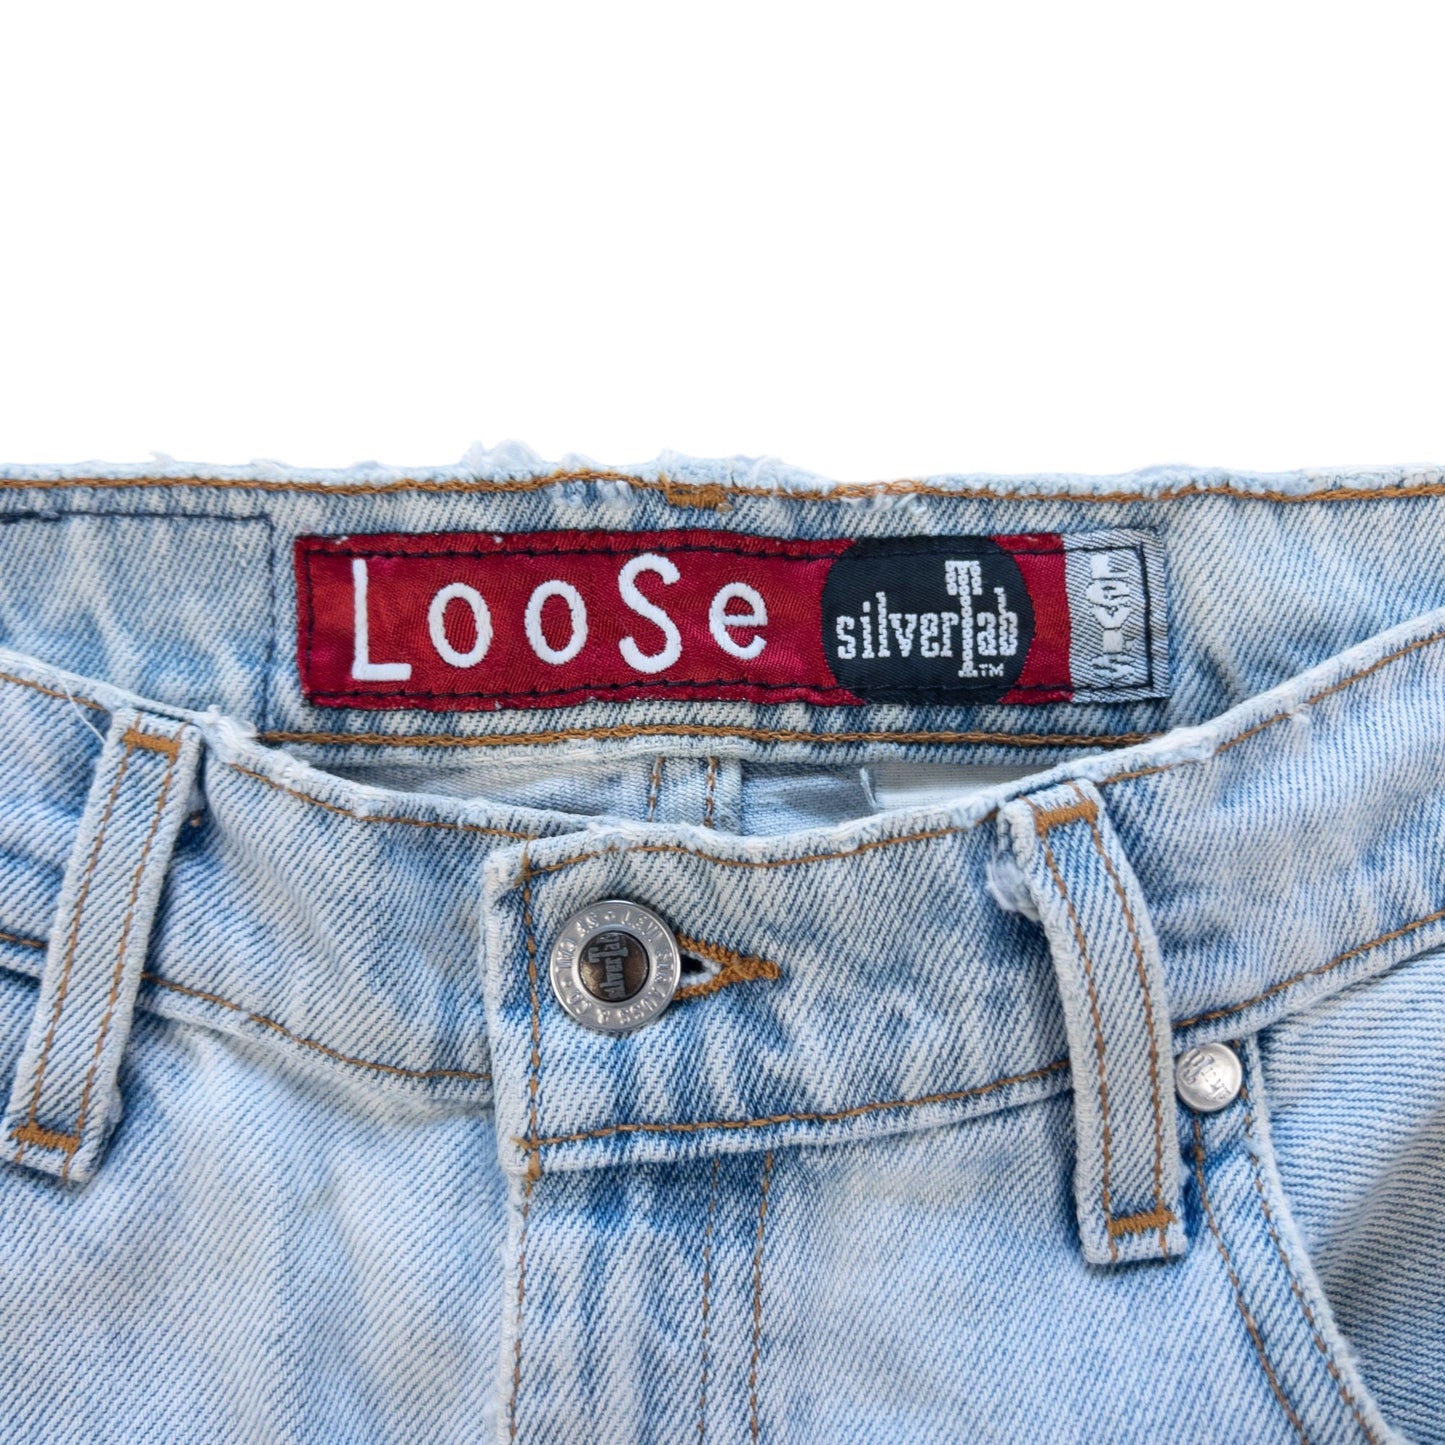 Vintage Levis Silver Tab Jeans Size W30